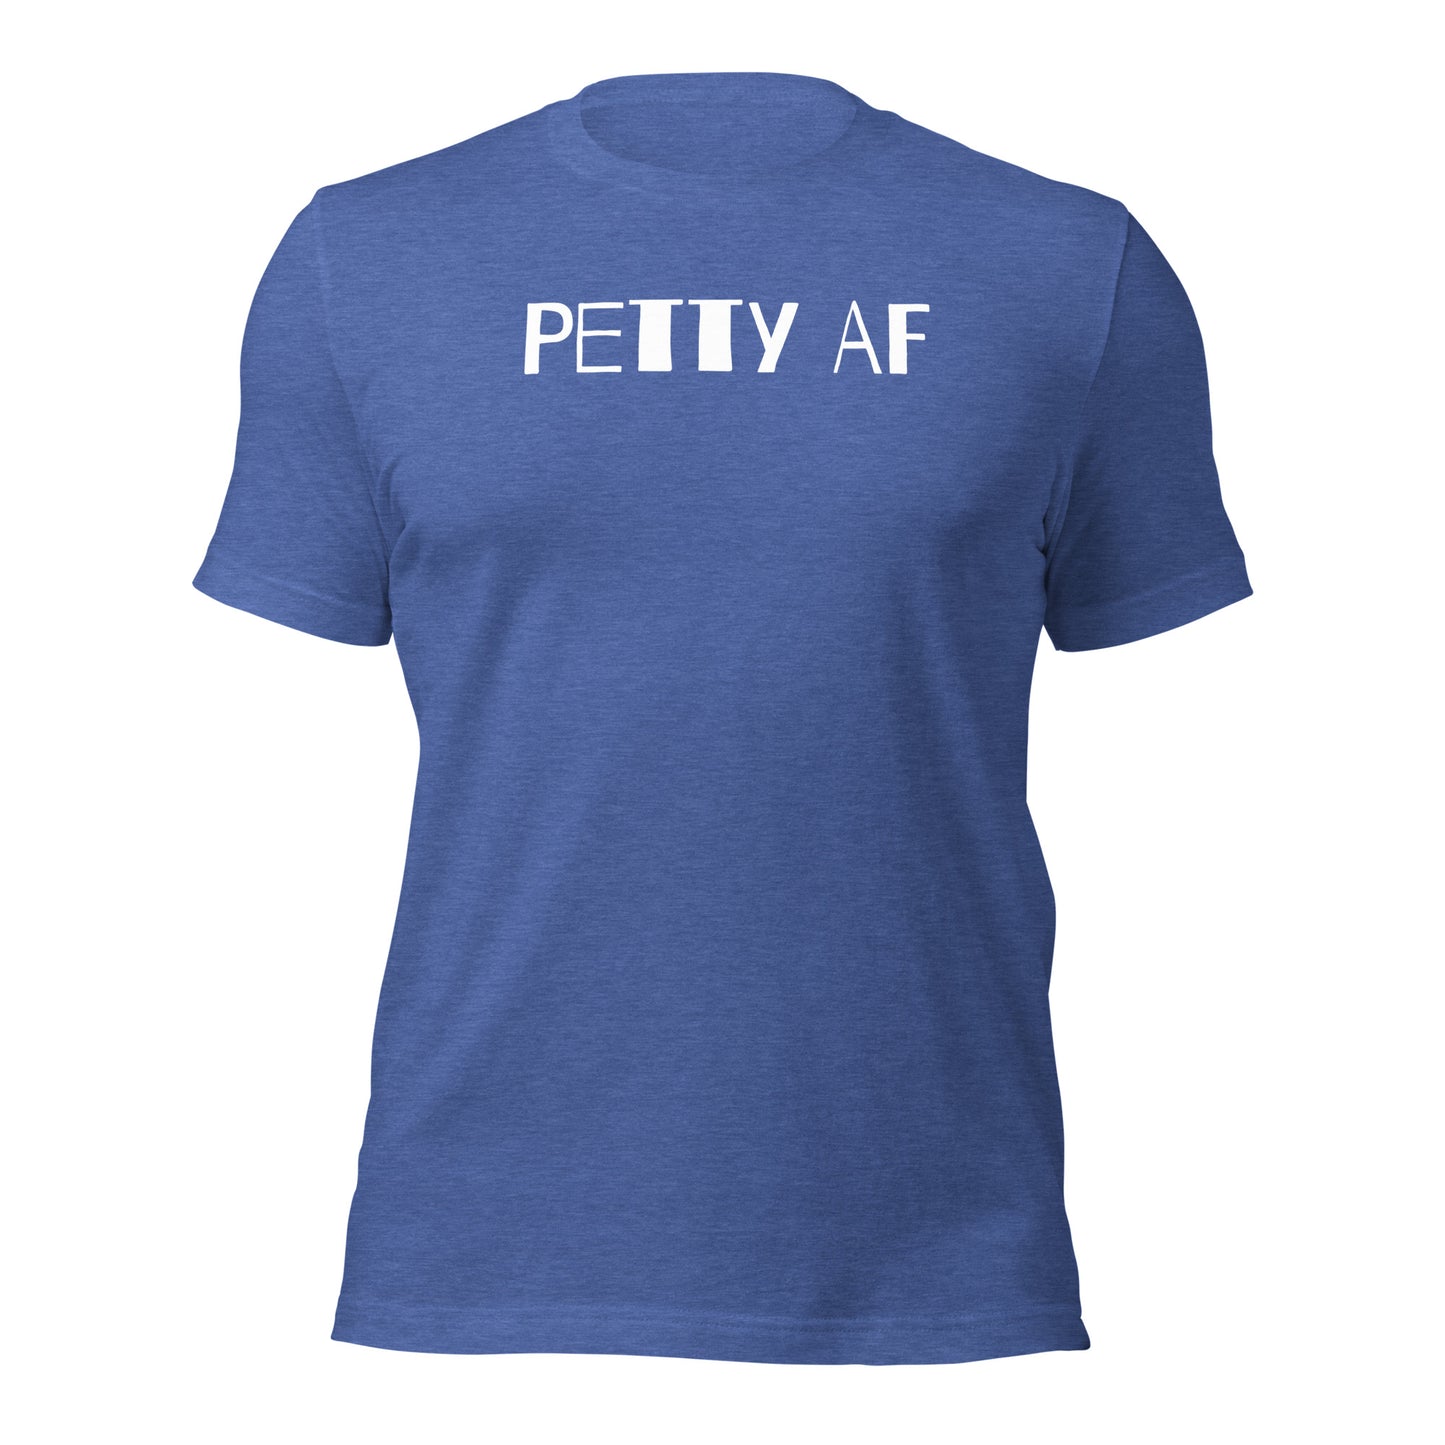 Petty AF Standout Entrepreneur T-Shirt